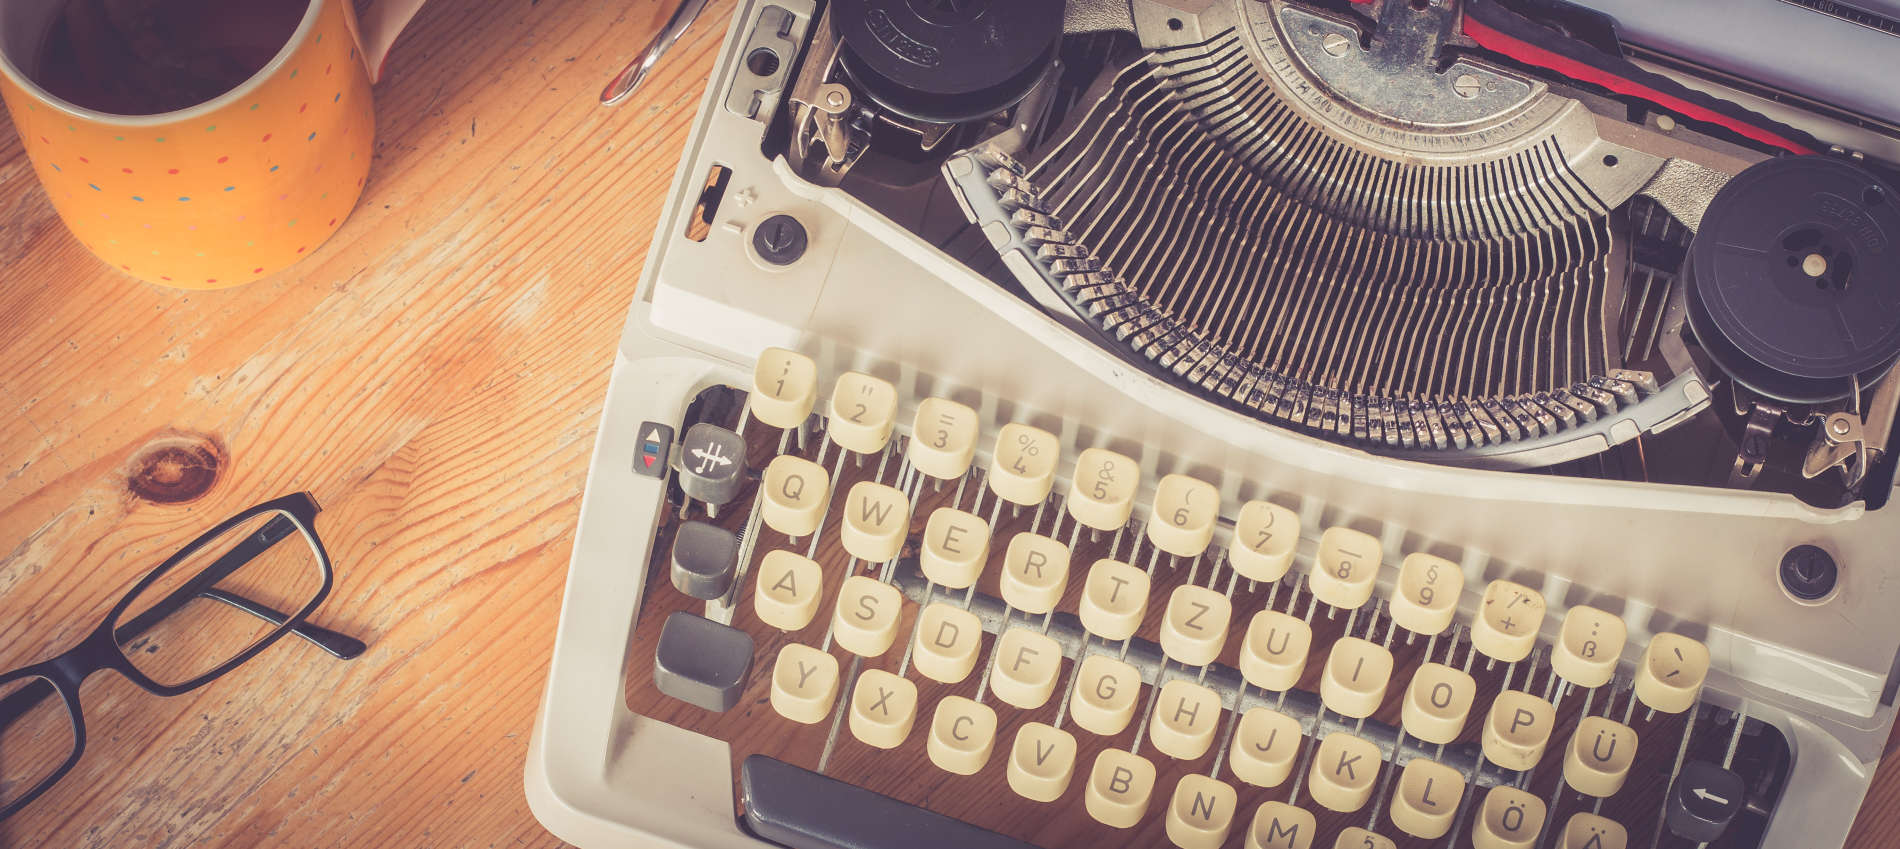 Die gute, alte Schreibmaschine: Ein nostalgisches Filmporträt über eine sterbende Ära.